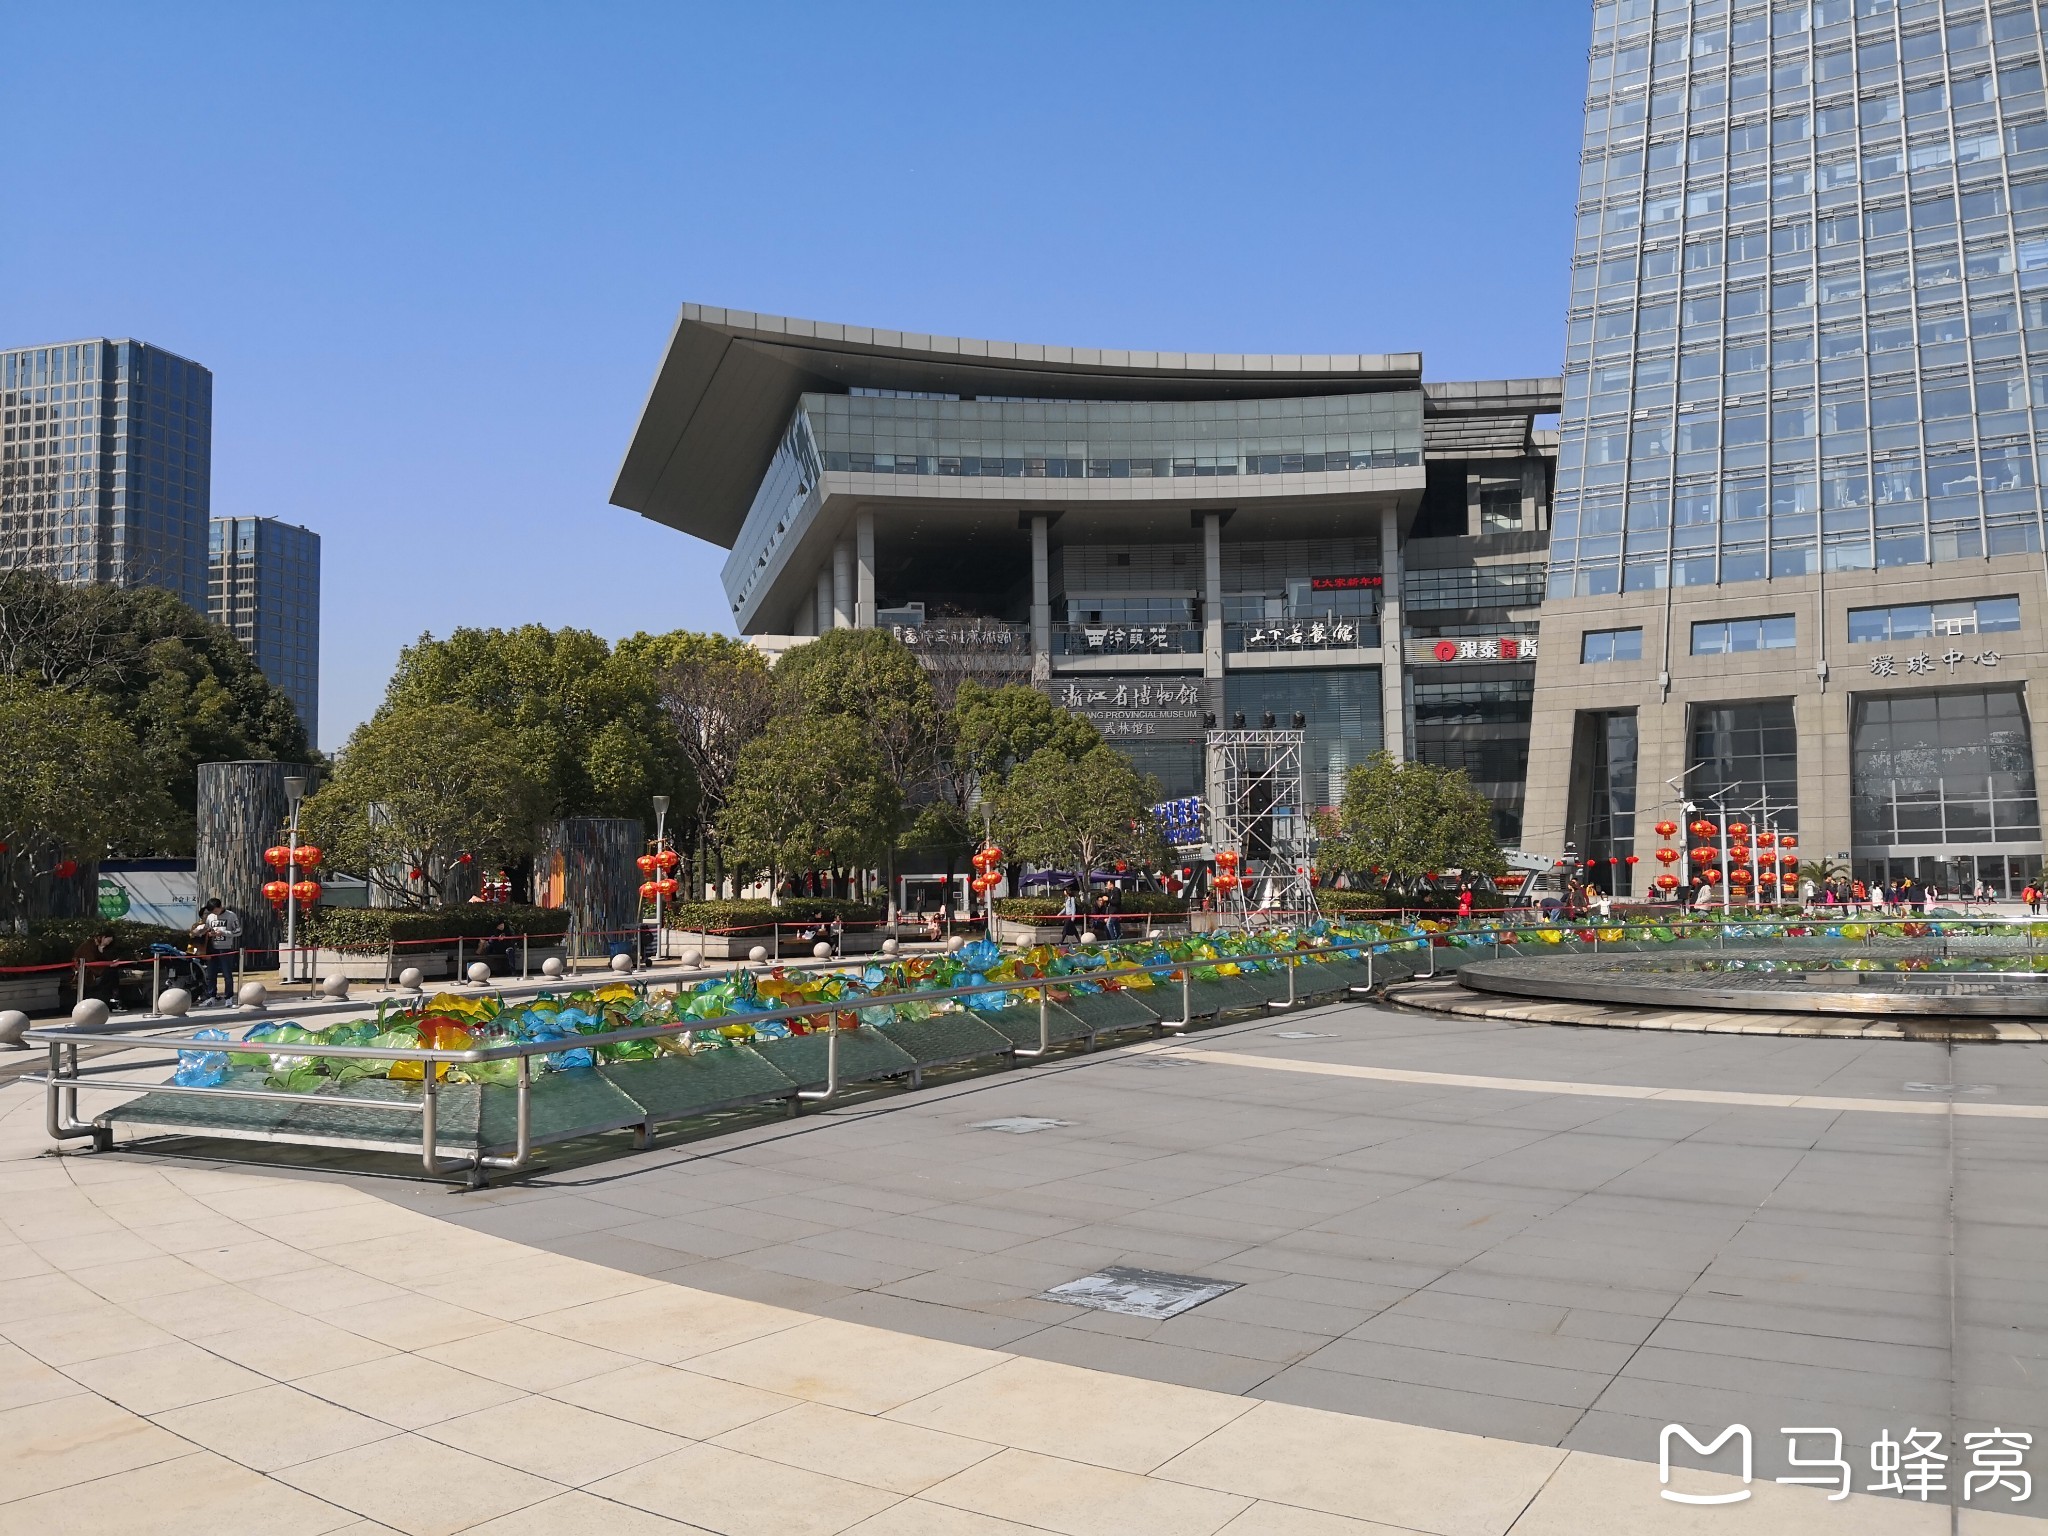 周末在杭州大运河边的武林广场,西湖文化广场,华浙公园等散步游走